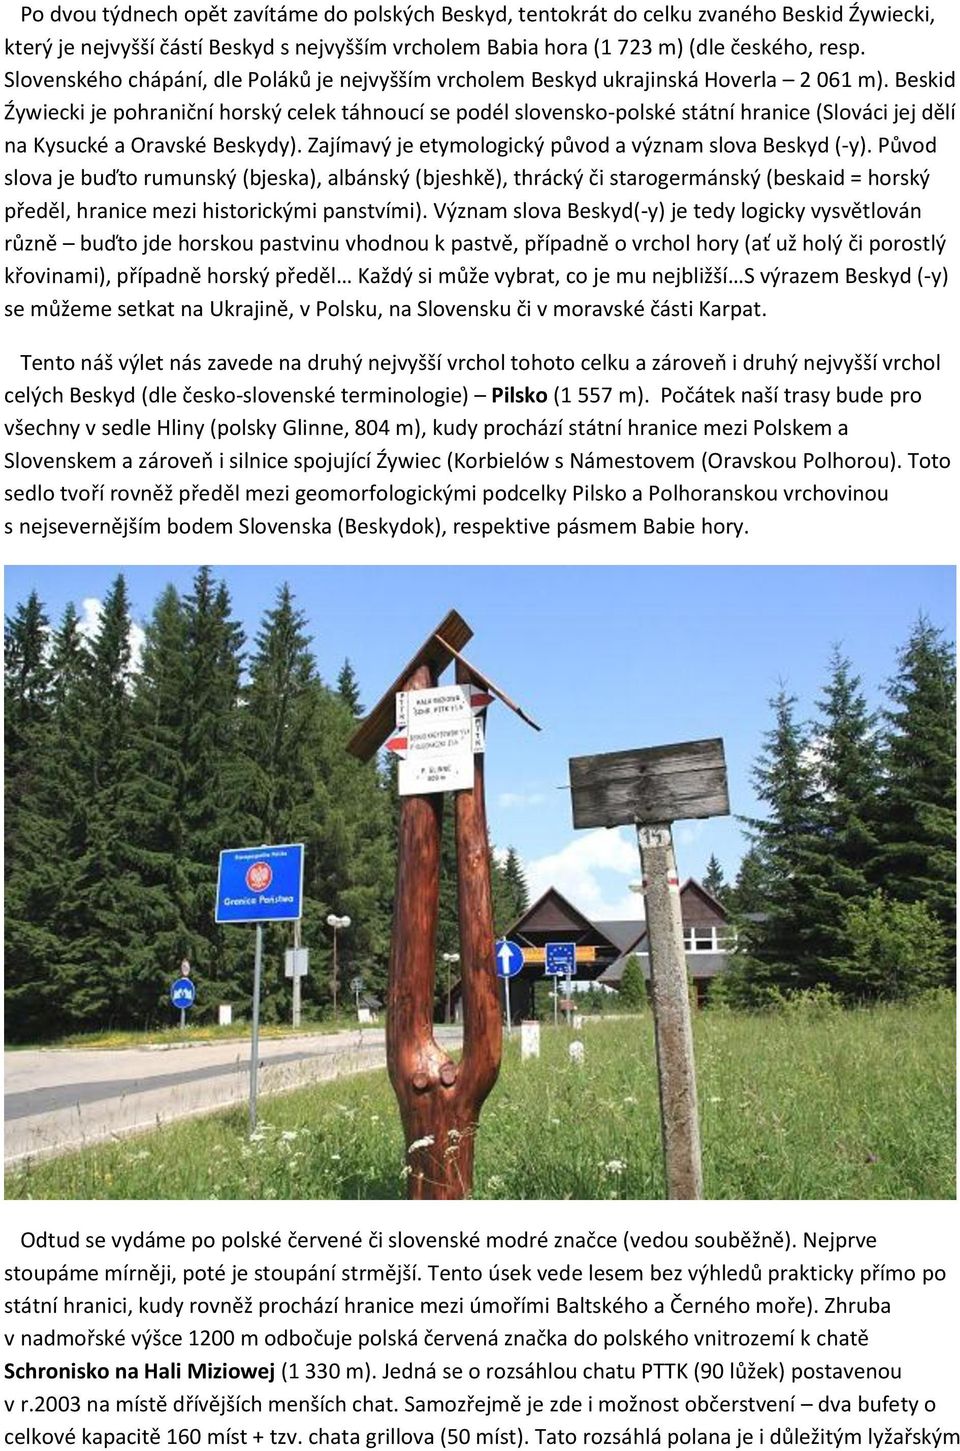 Beskid Źywiecki je pohraniční horský celek táhnoucí se podél slovensko-polské státní hranice (Slováci jej dělí na Kysucké a Oravské Beskydy). Zajímavý je etymologický původ a význam slova Beskyd (-y).